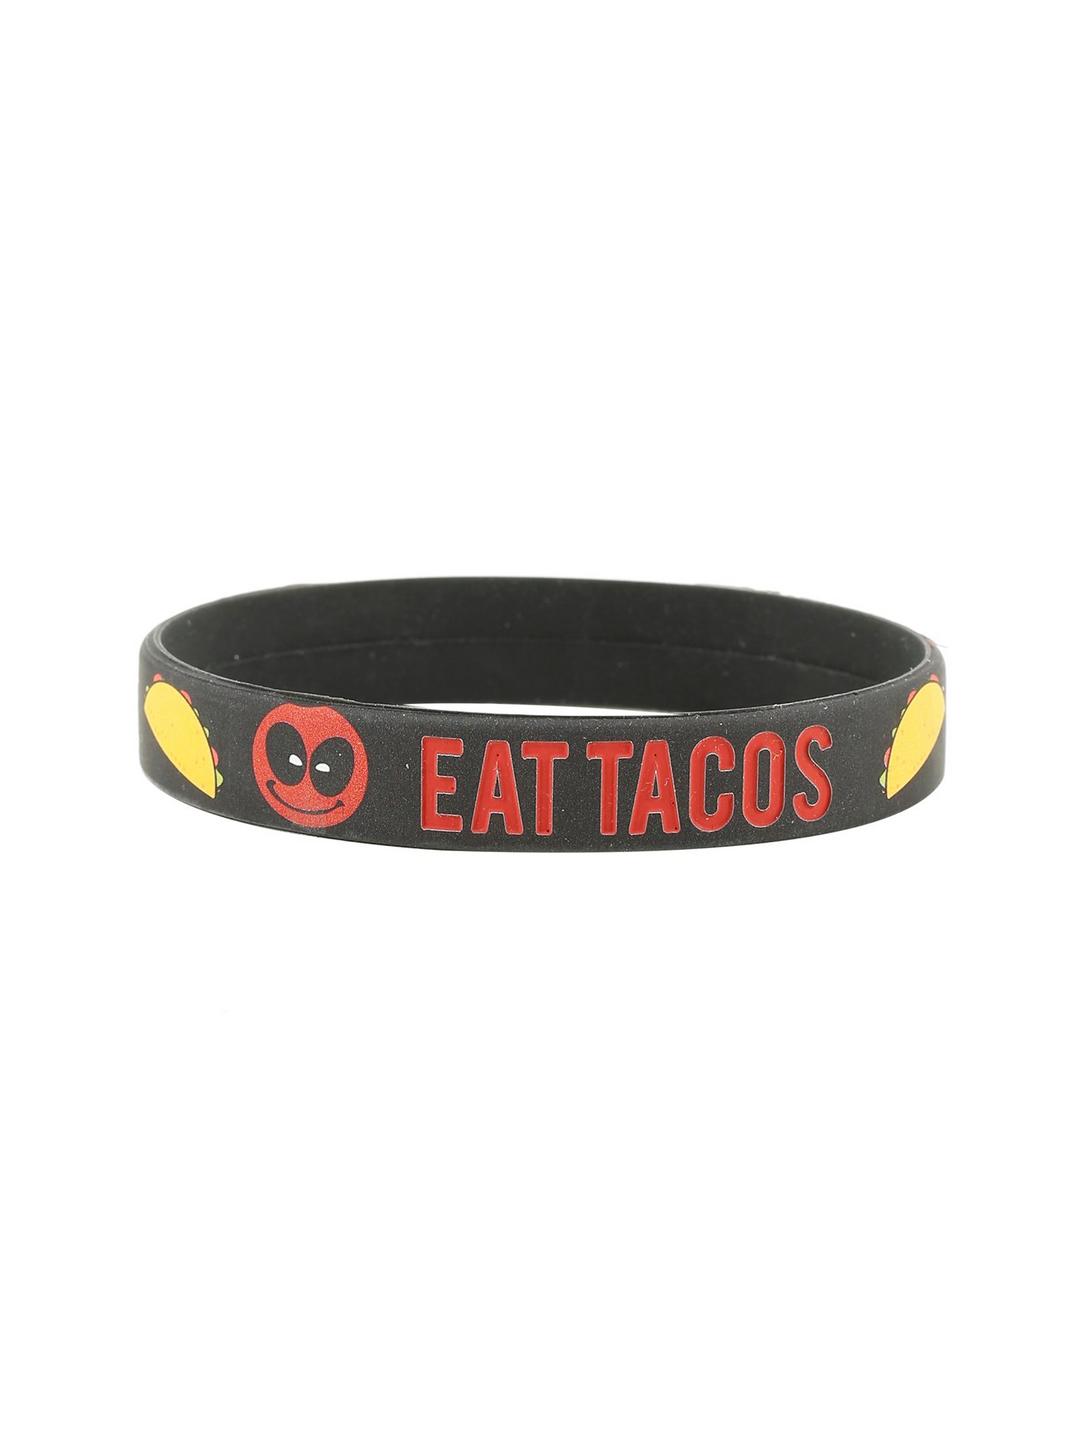 Marvel Deadpool Eat Tacos Rubber Bracelet, , hi-res